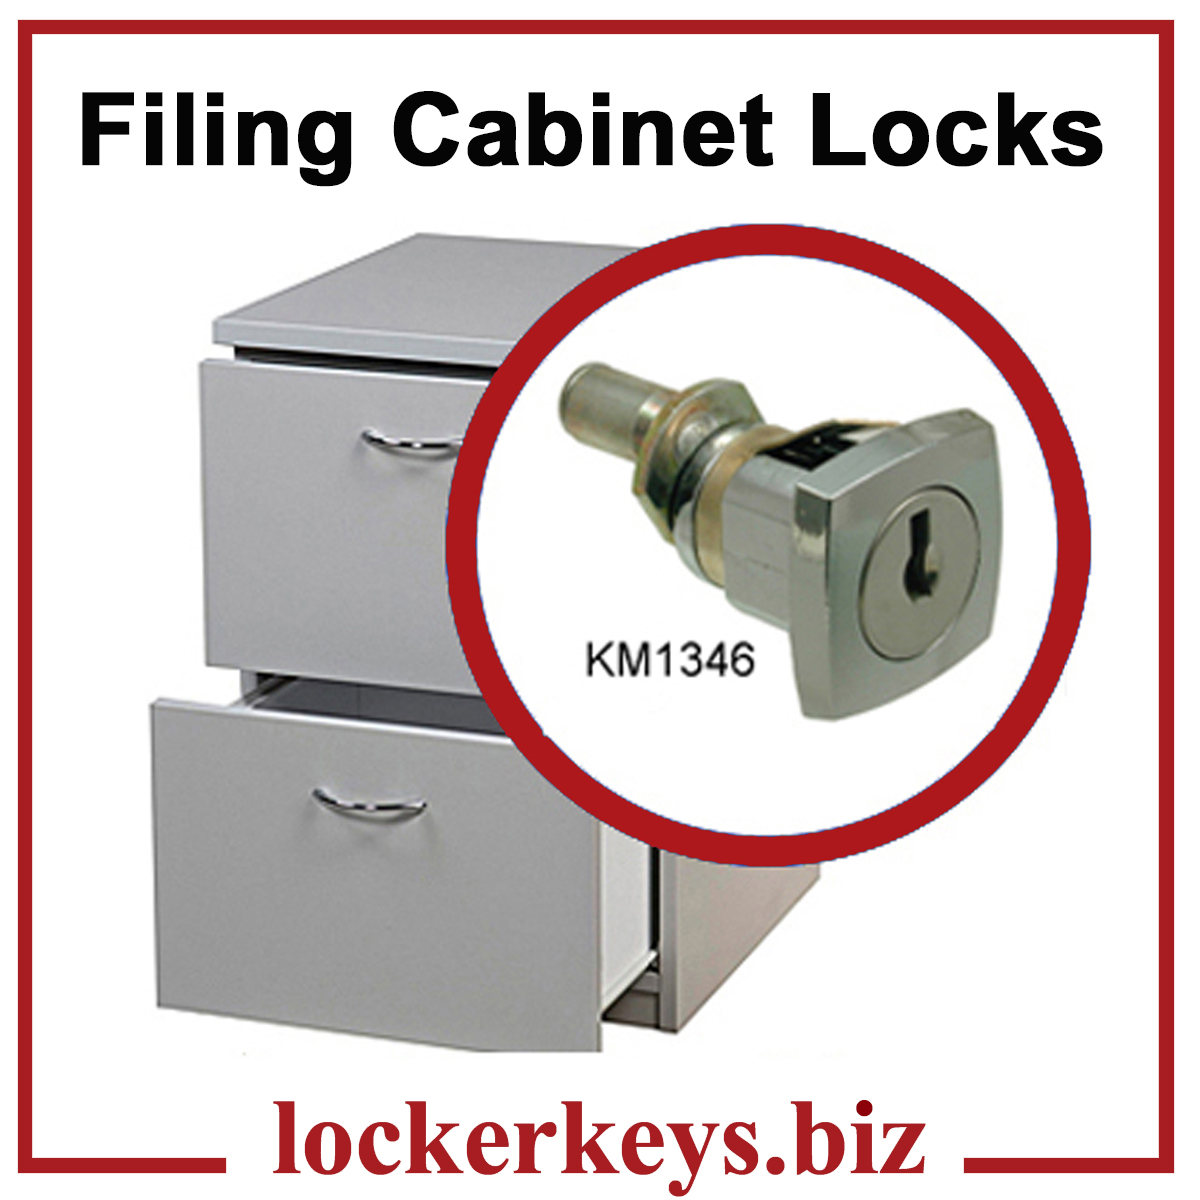 Metal Filing Cabinet Locks